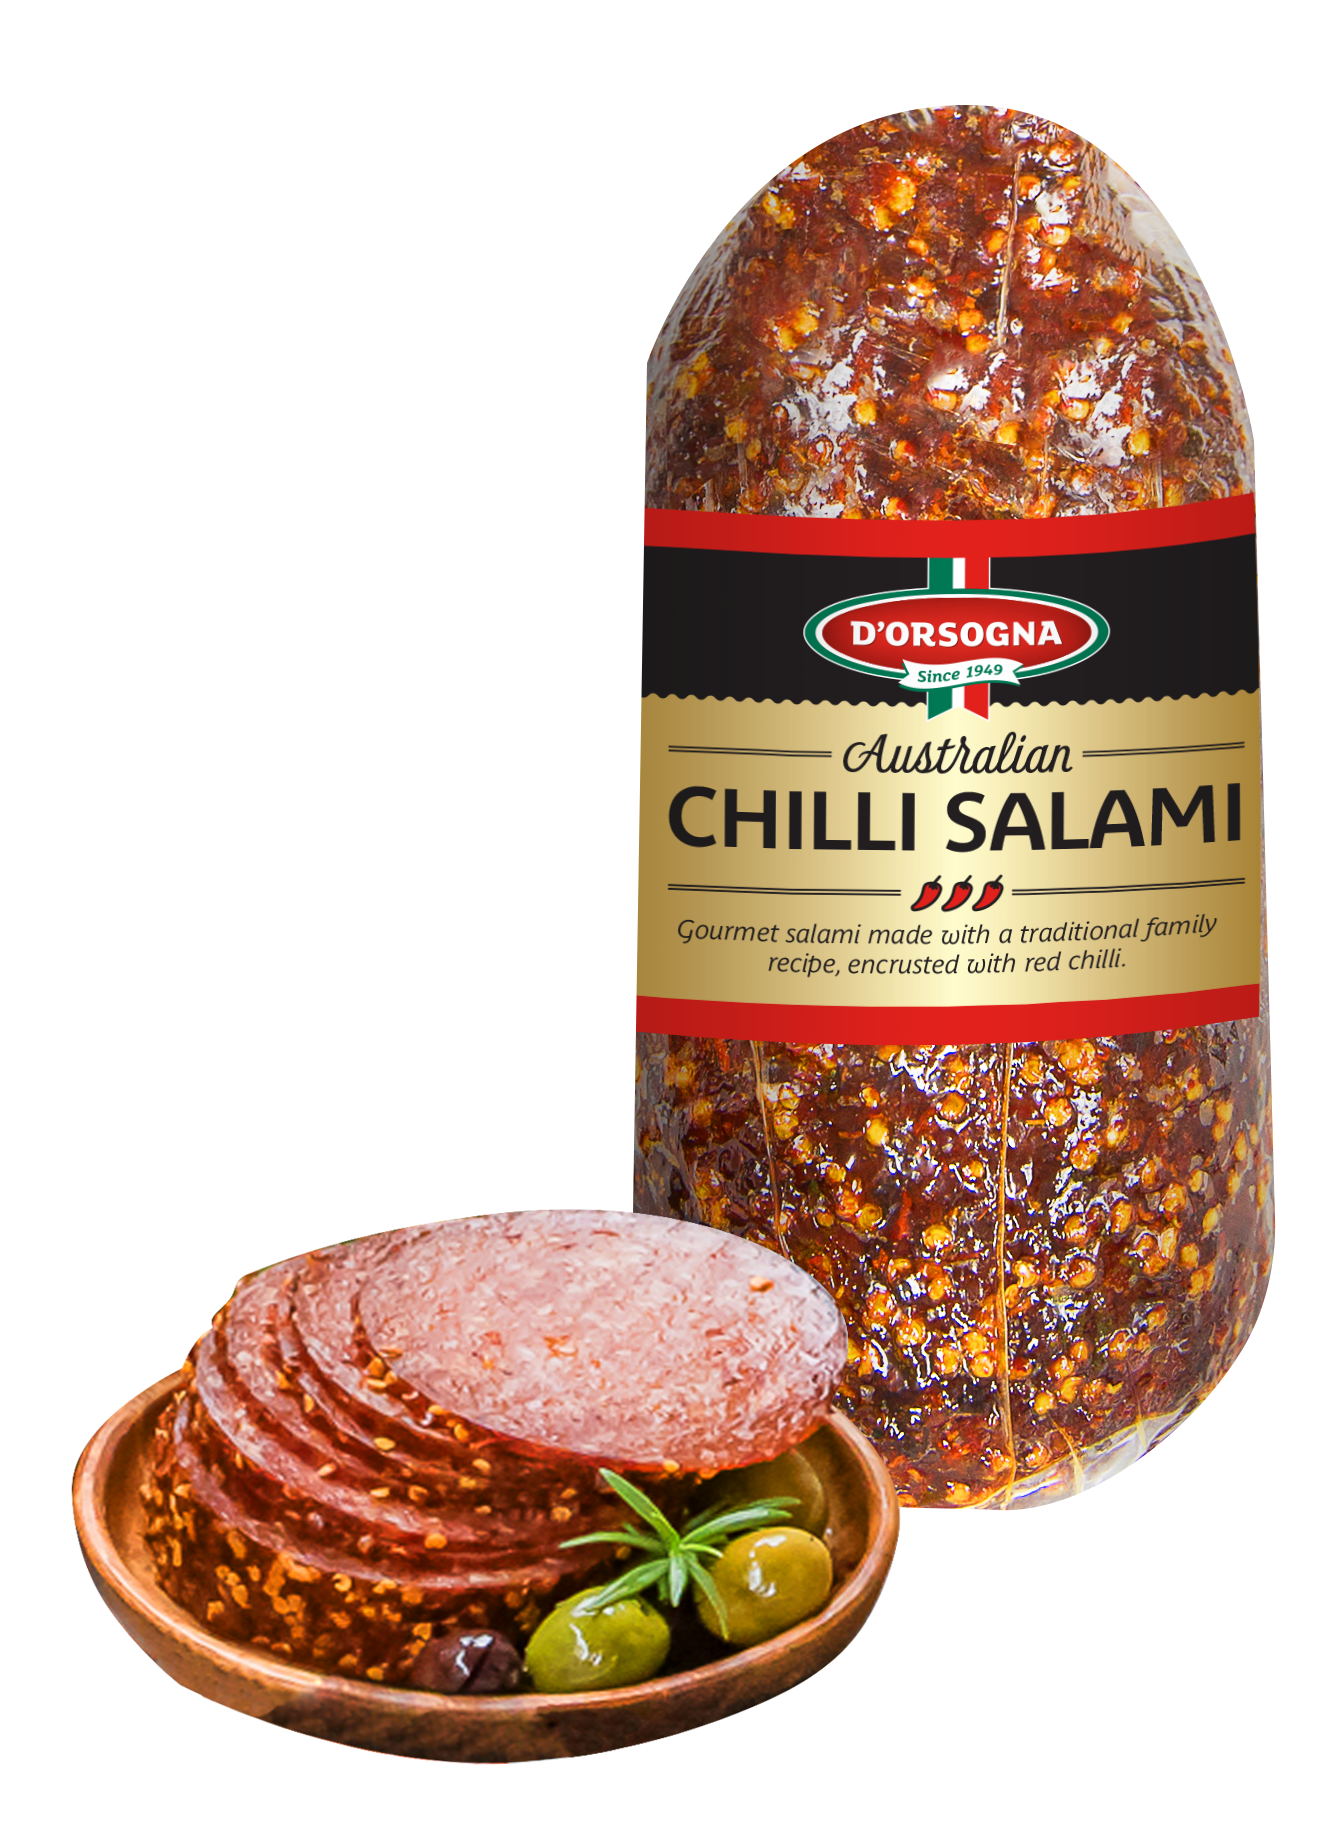 Chilli Salami – D'Orsogna